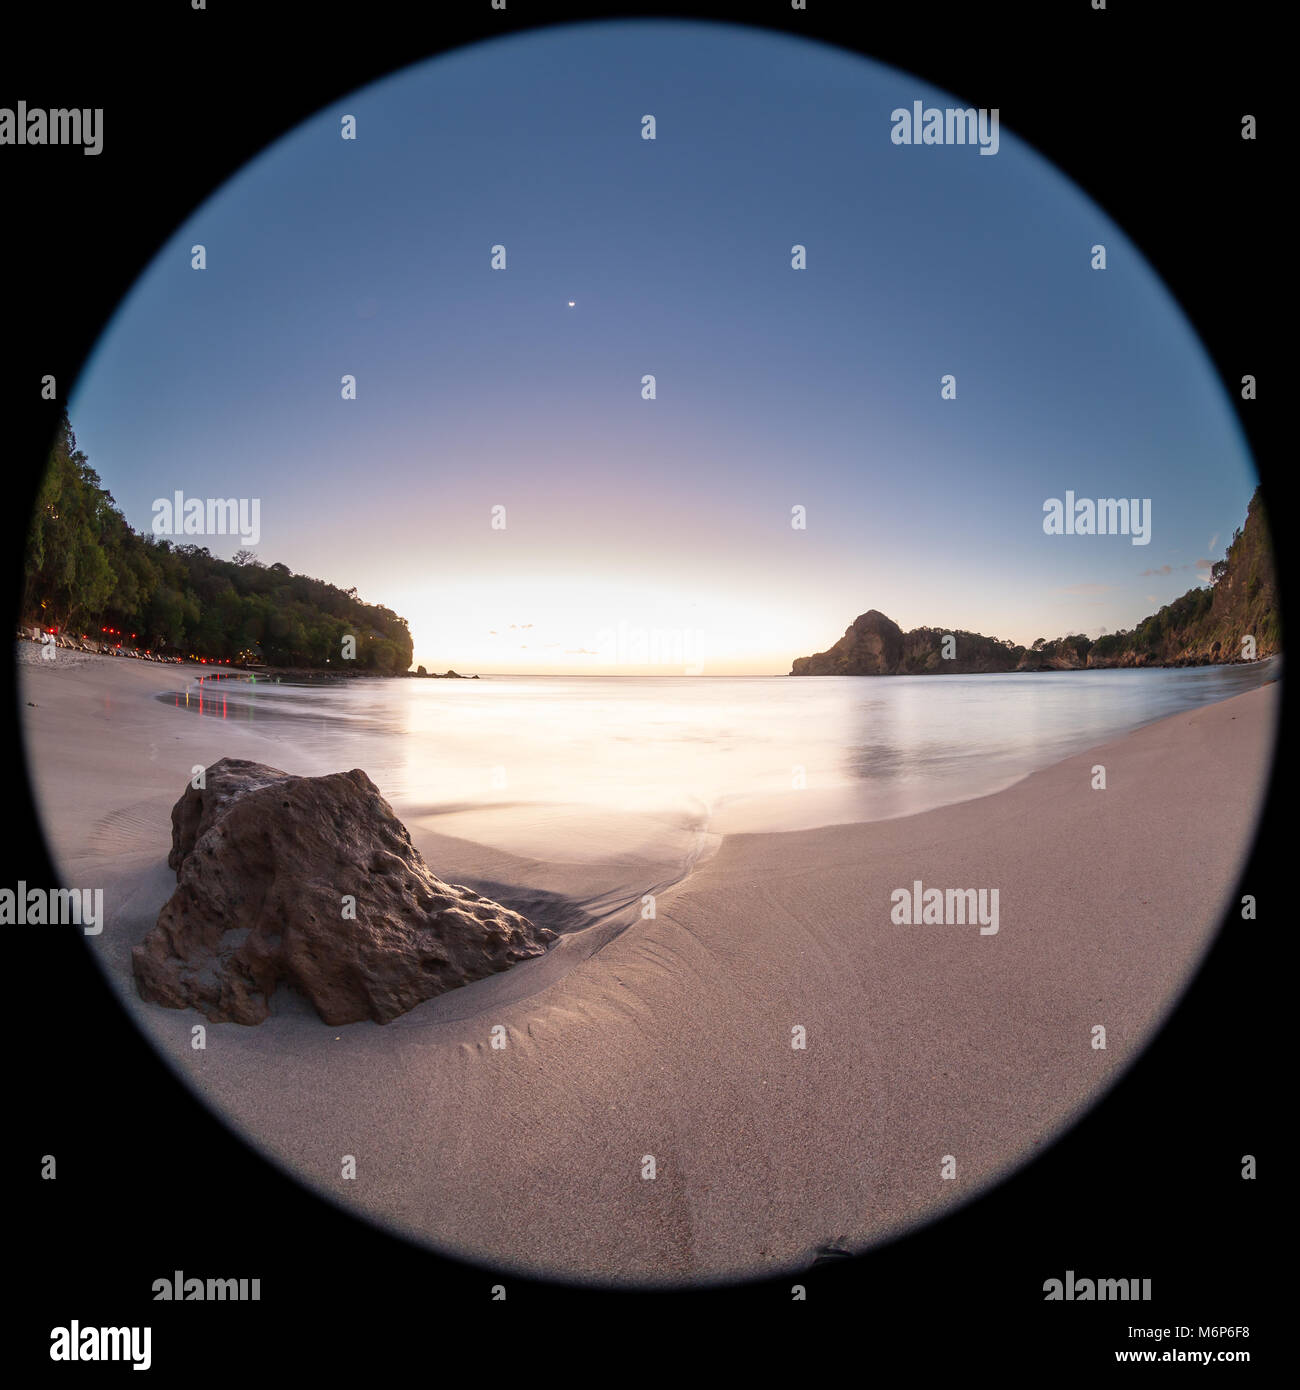 Entspannende beach Szene mit einem Fish Eye Objektiv erzeugen Kreisförmige Super Wide Angle View bei Sonnenuntergang mit hellen blauen Himmel Stockfoto